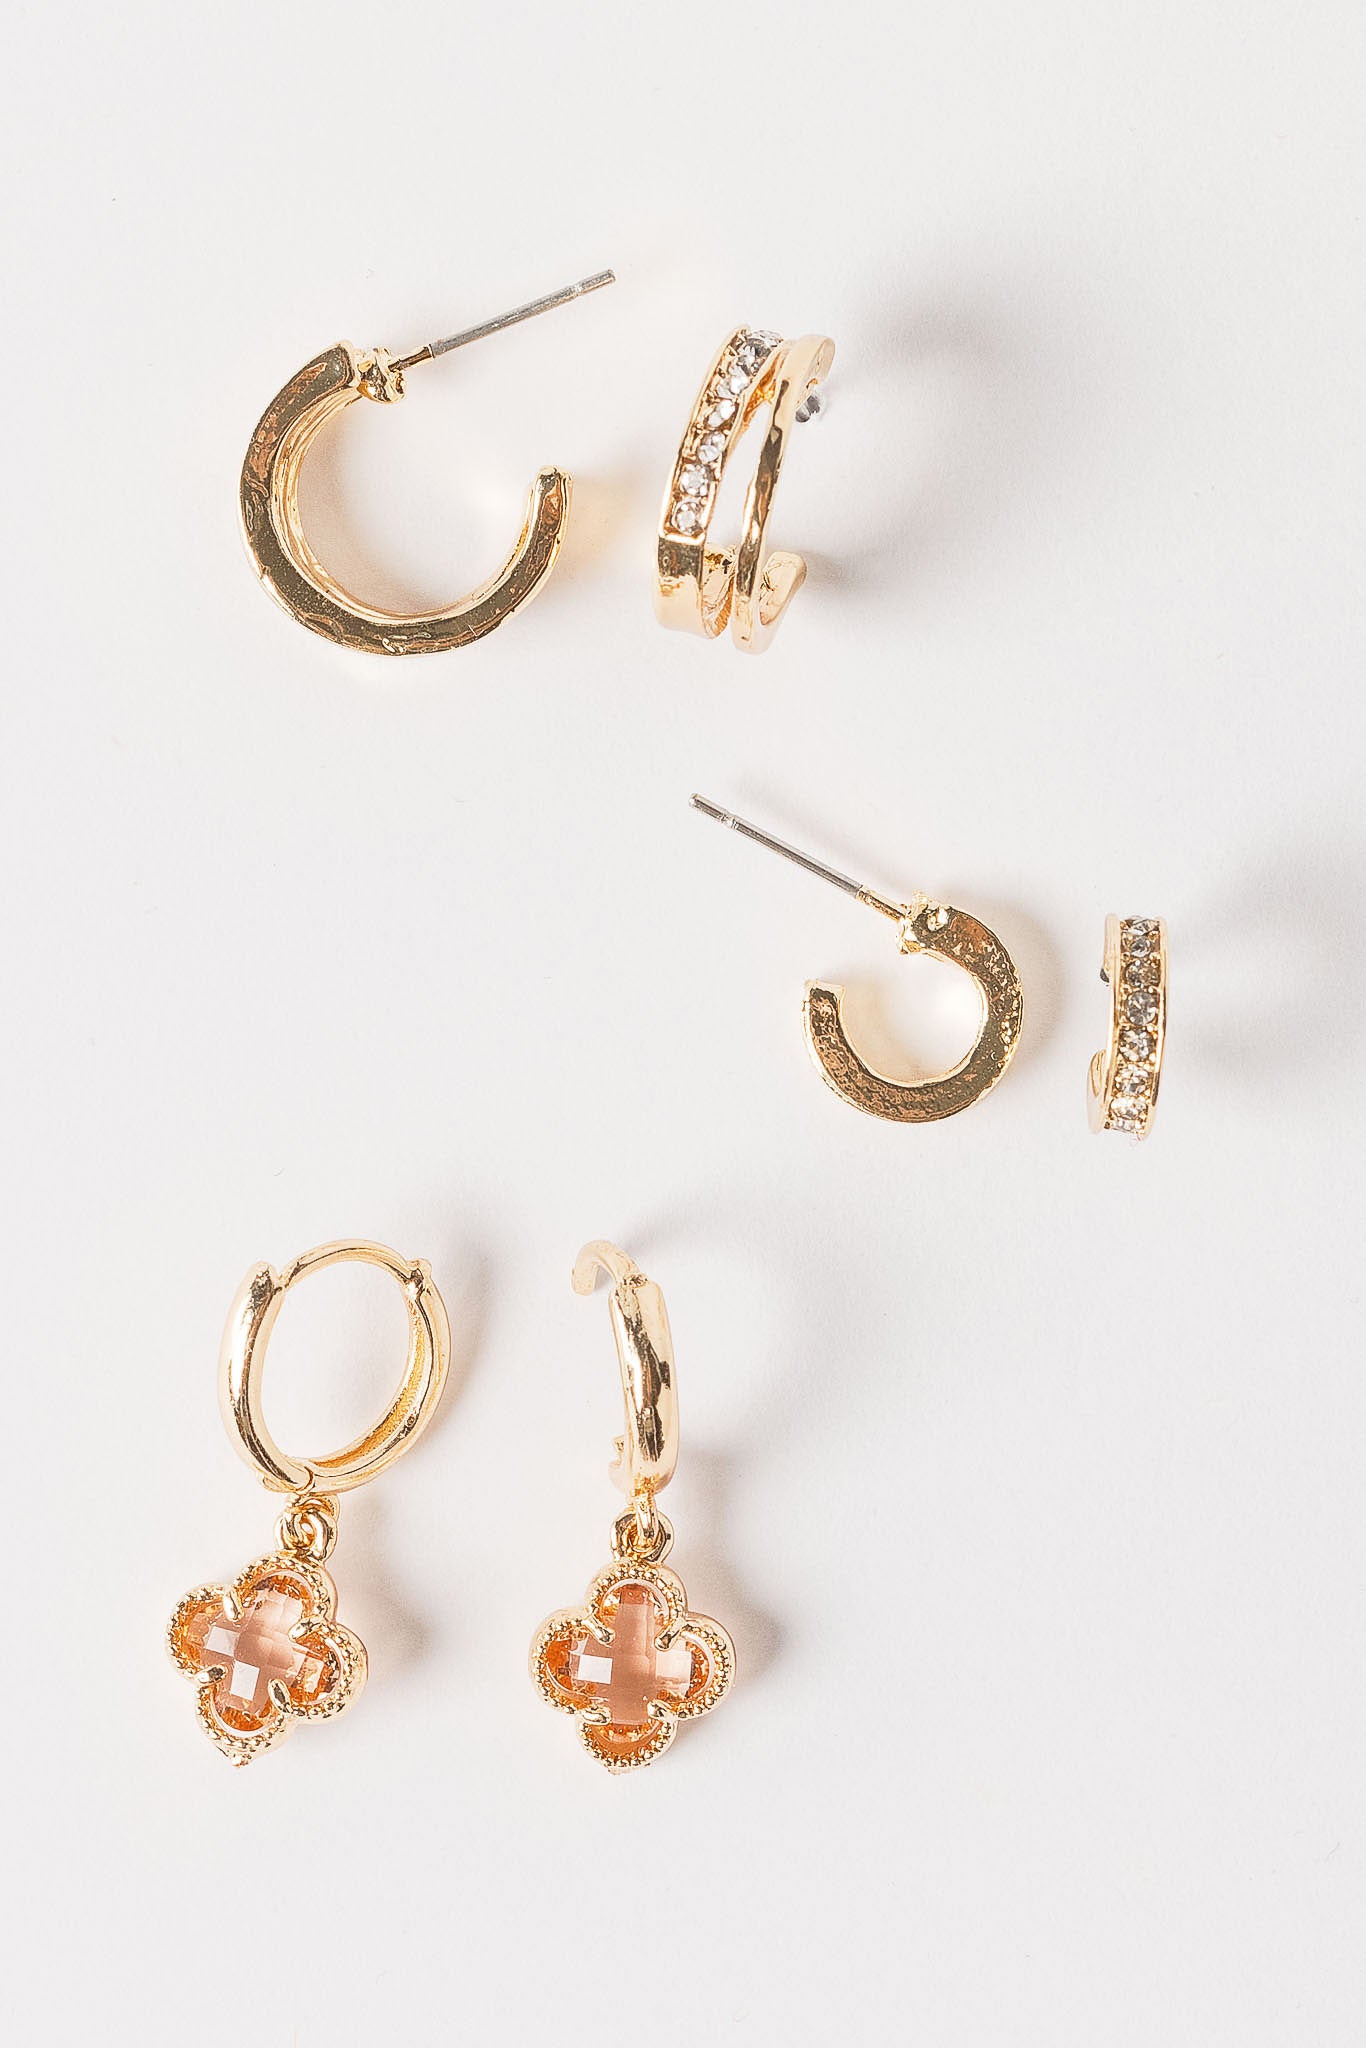 Clover and Rhinestone Huggie Earring Set